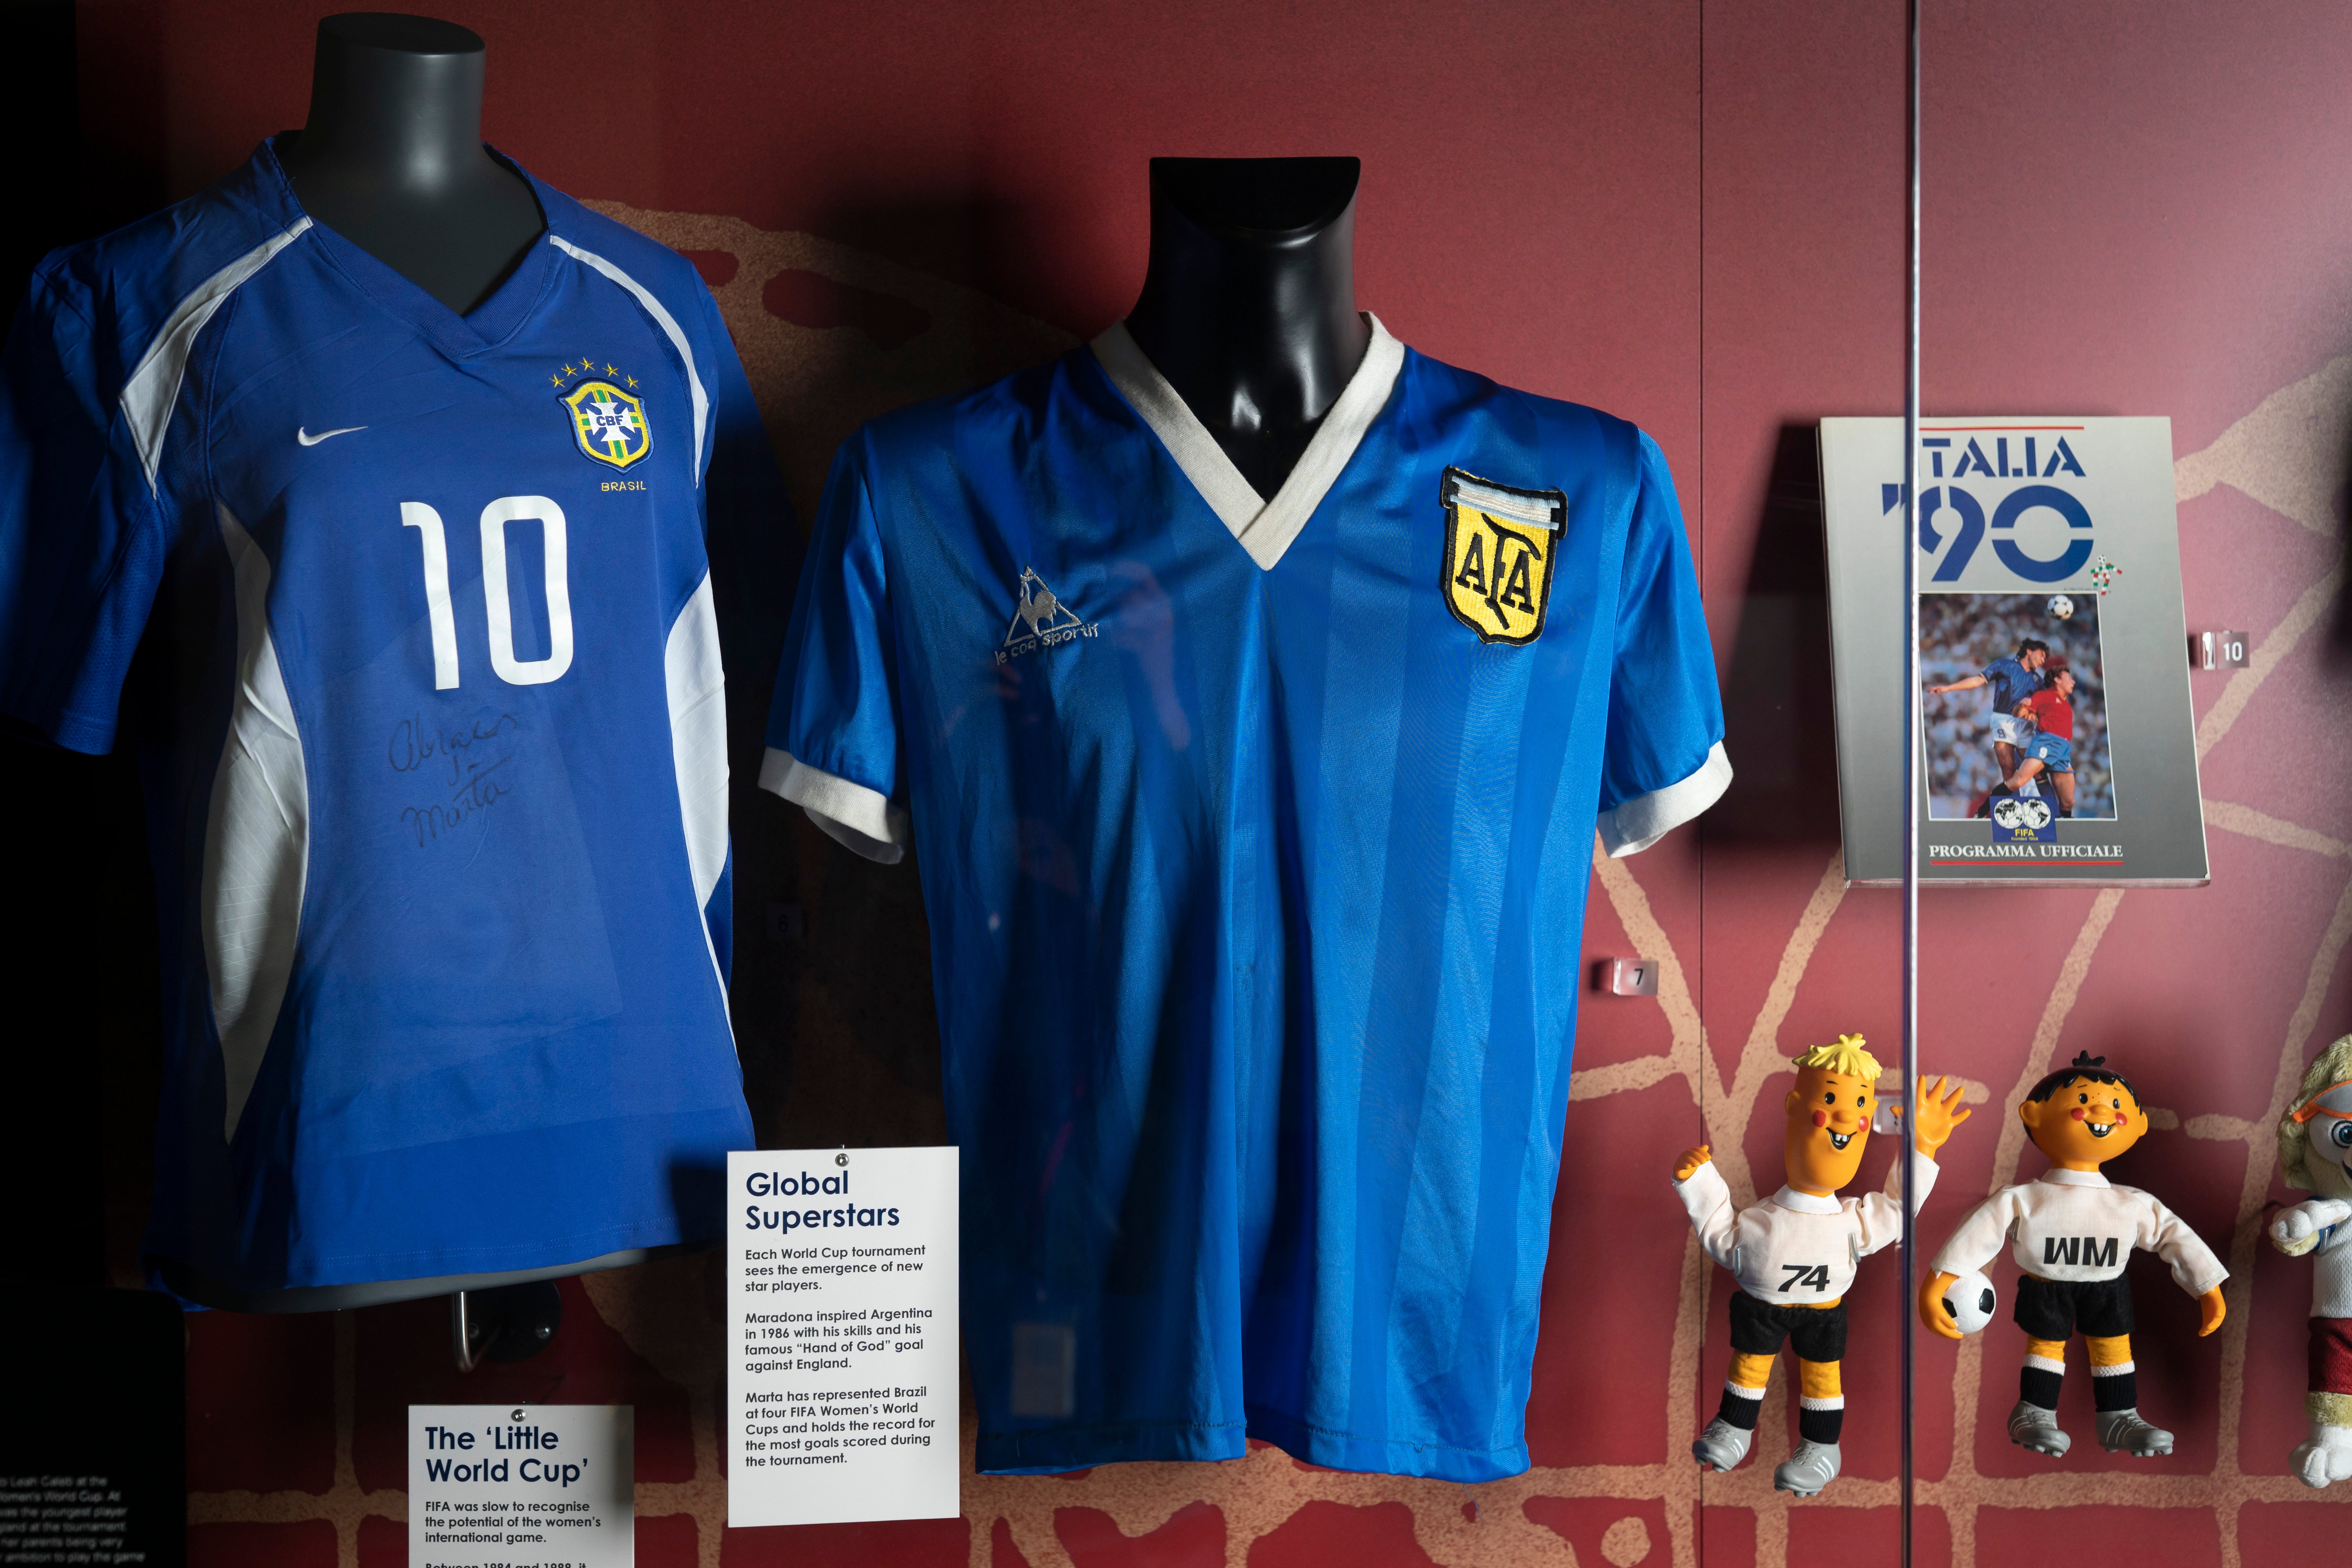 La camiseta de Maradona con la que anotó el gol de “La mano de Dios” se encuentra en el Museo Nacional del Fútbol de Inglaterra en Manchester